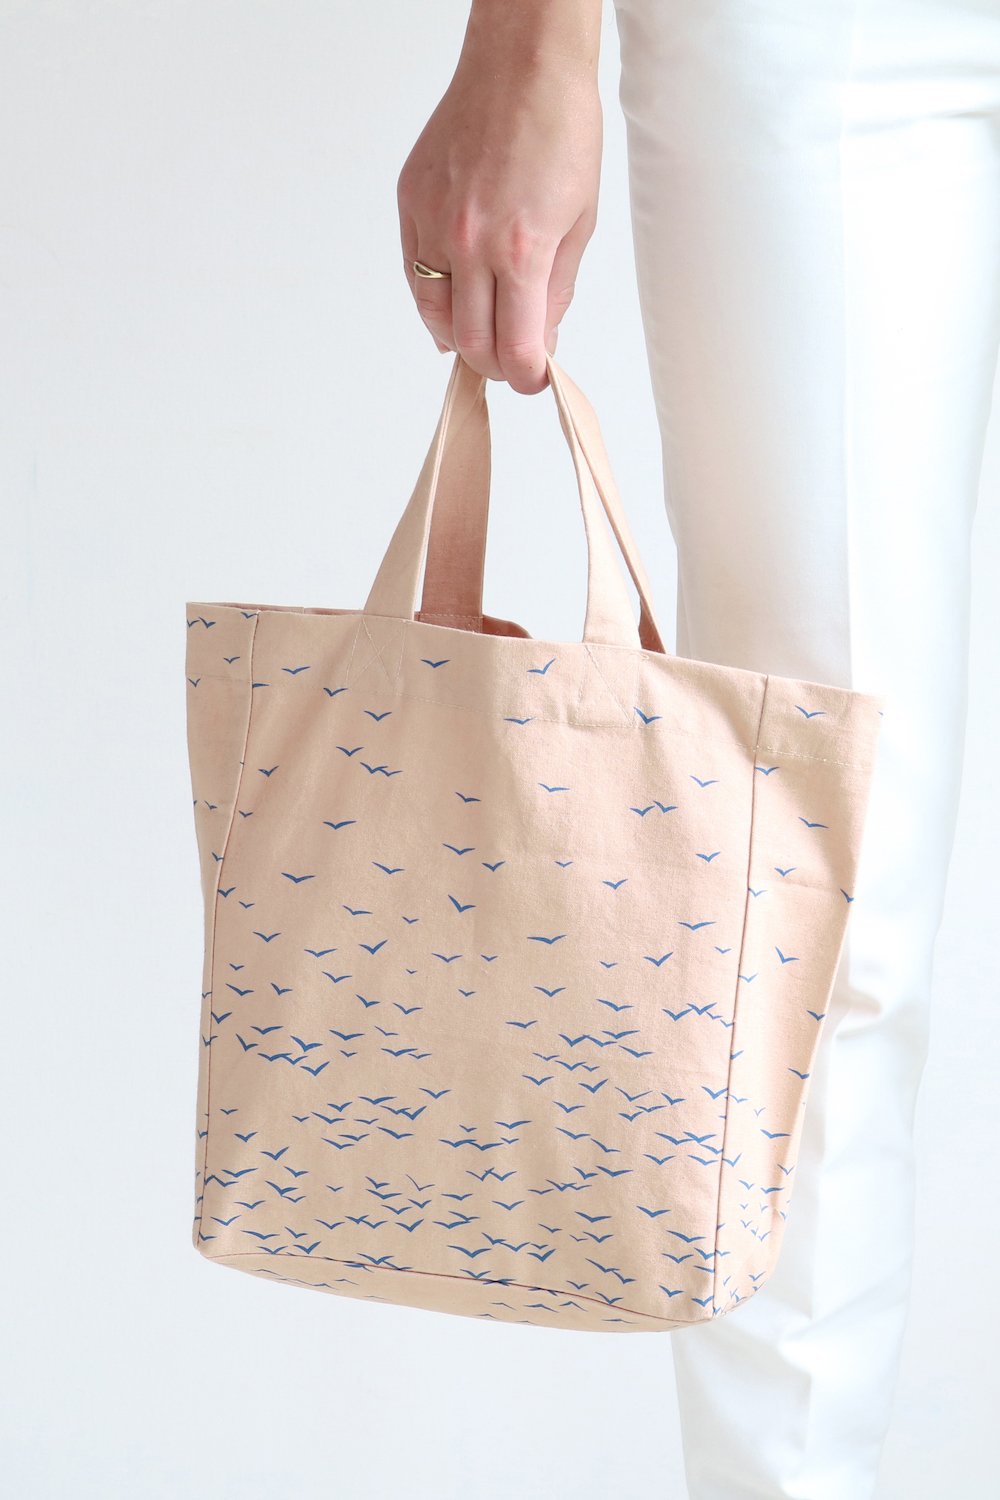 SKY - small fairtrade, organic cotton tote bag in apricot